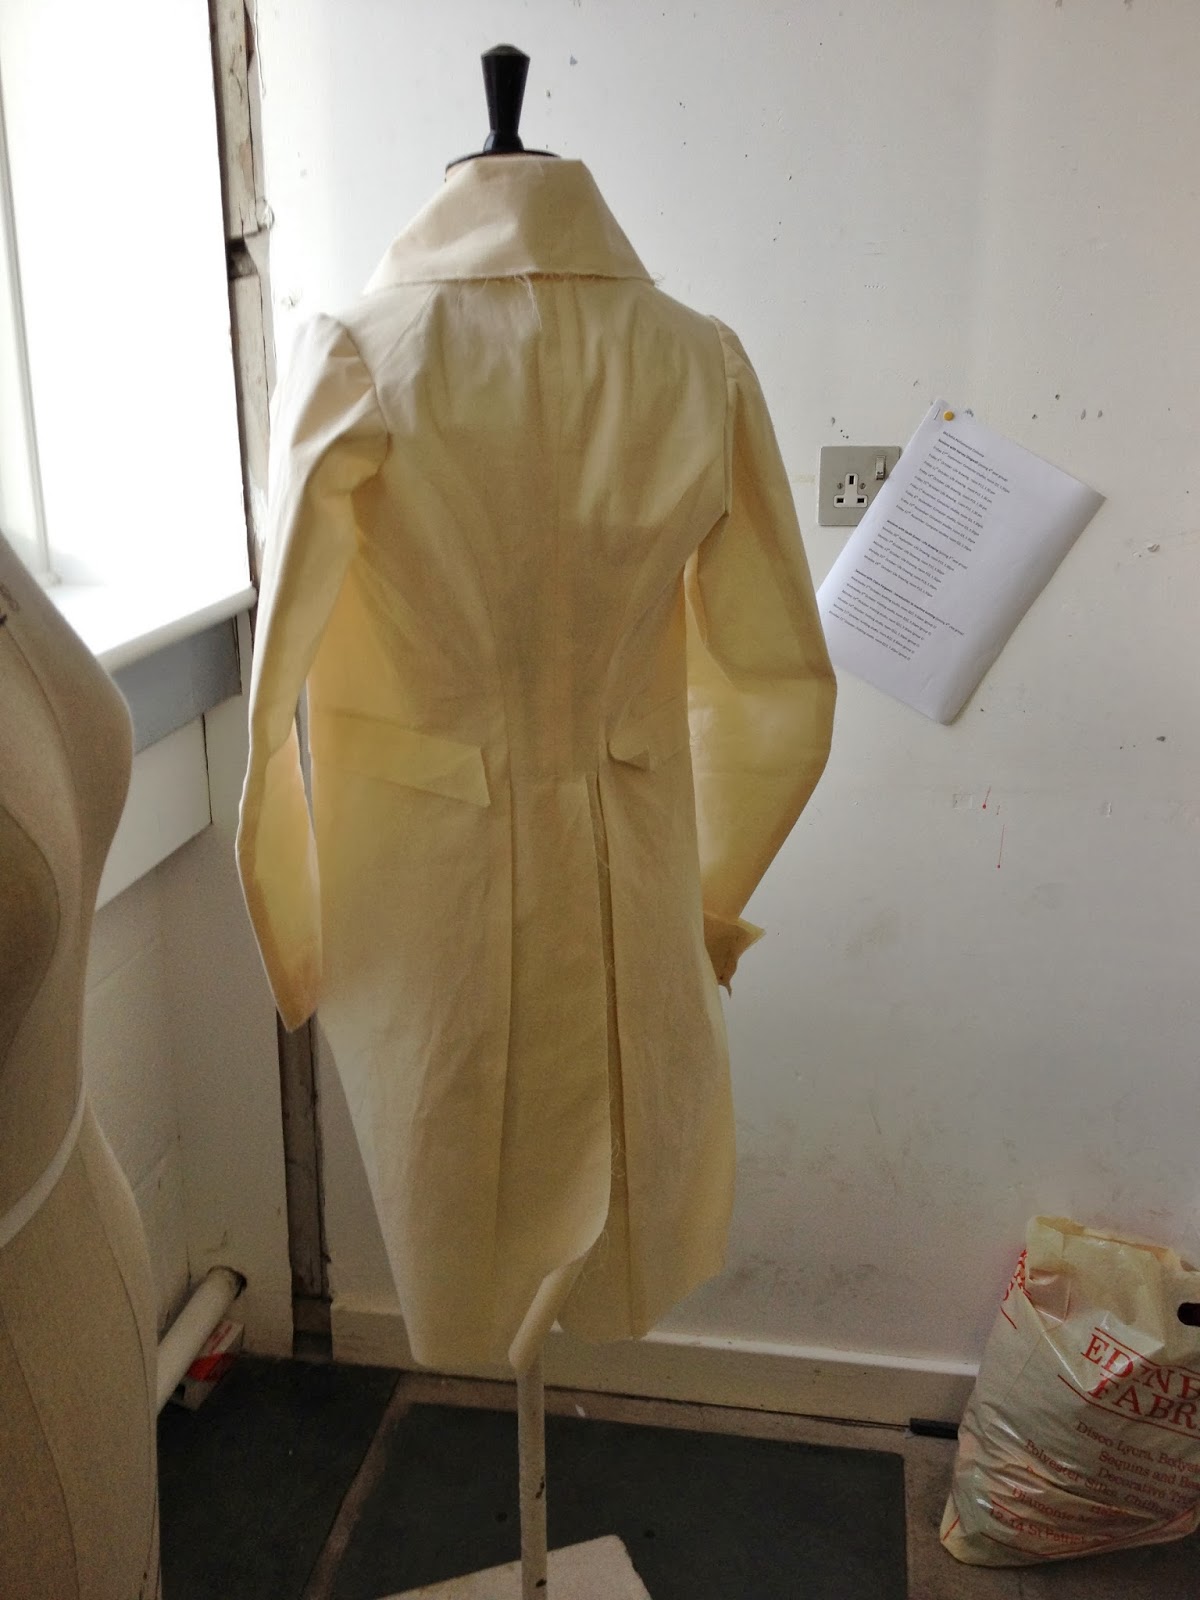 Gwendolyn Grey: 1825 Dress-Coat test run